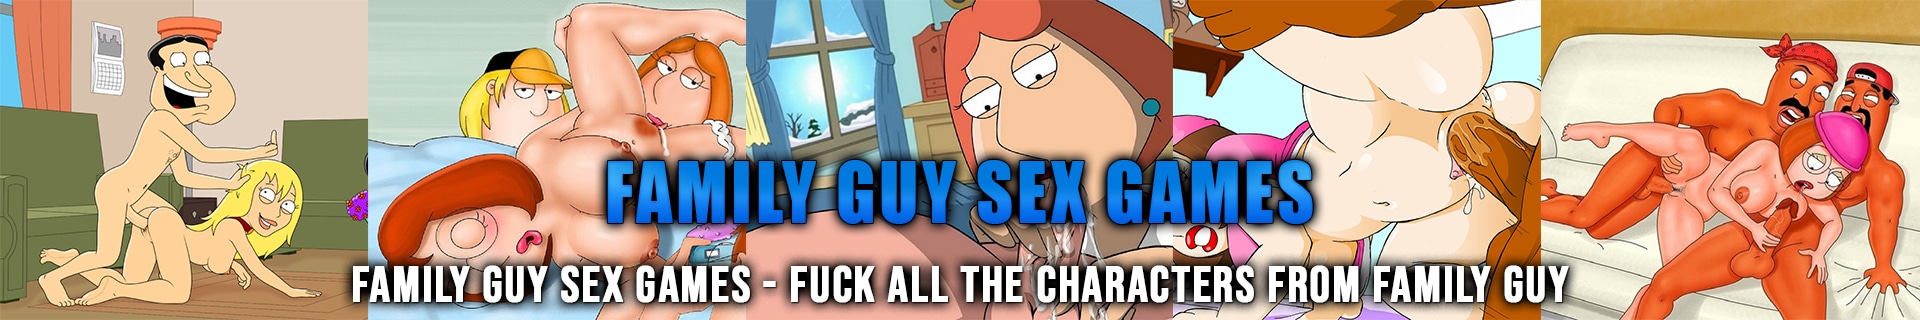 Game family guy sex Family Guy